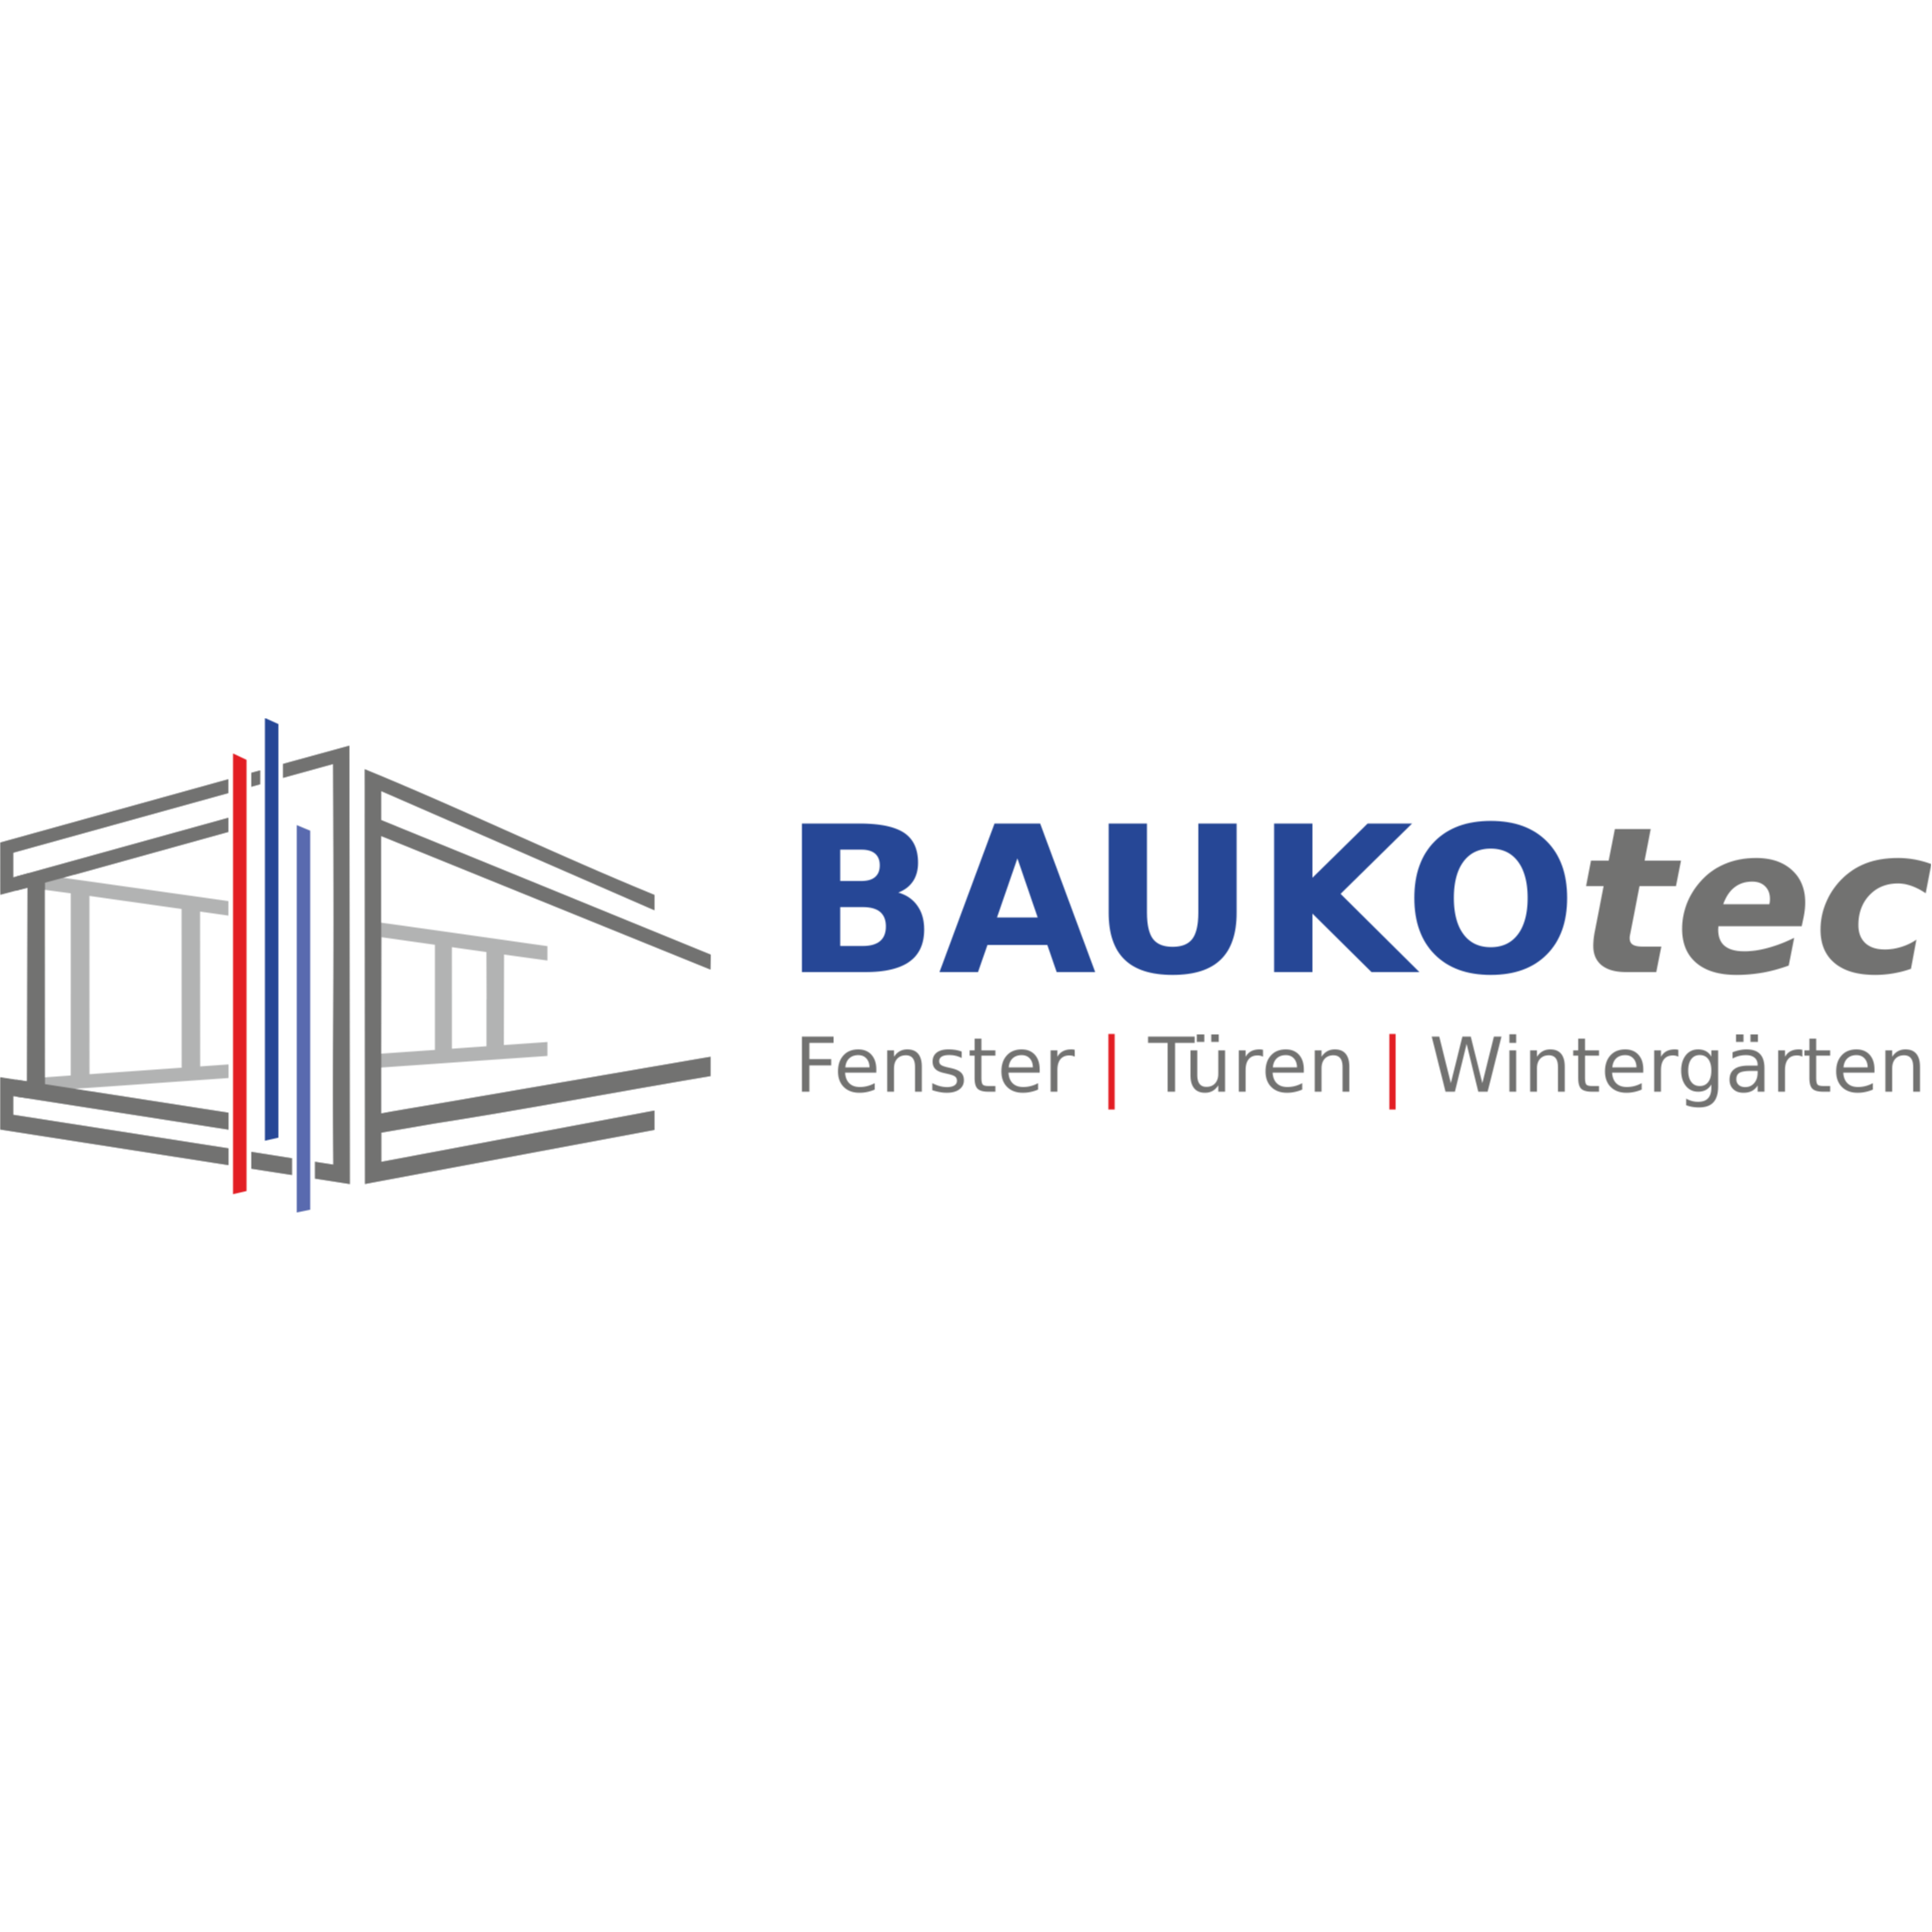 BAUKO-tec GmbH | Fenster, Türen, Wintergärten  